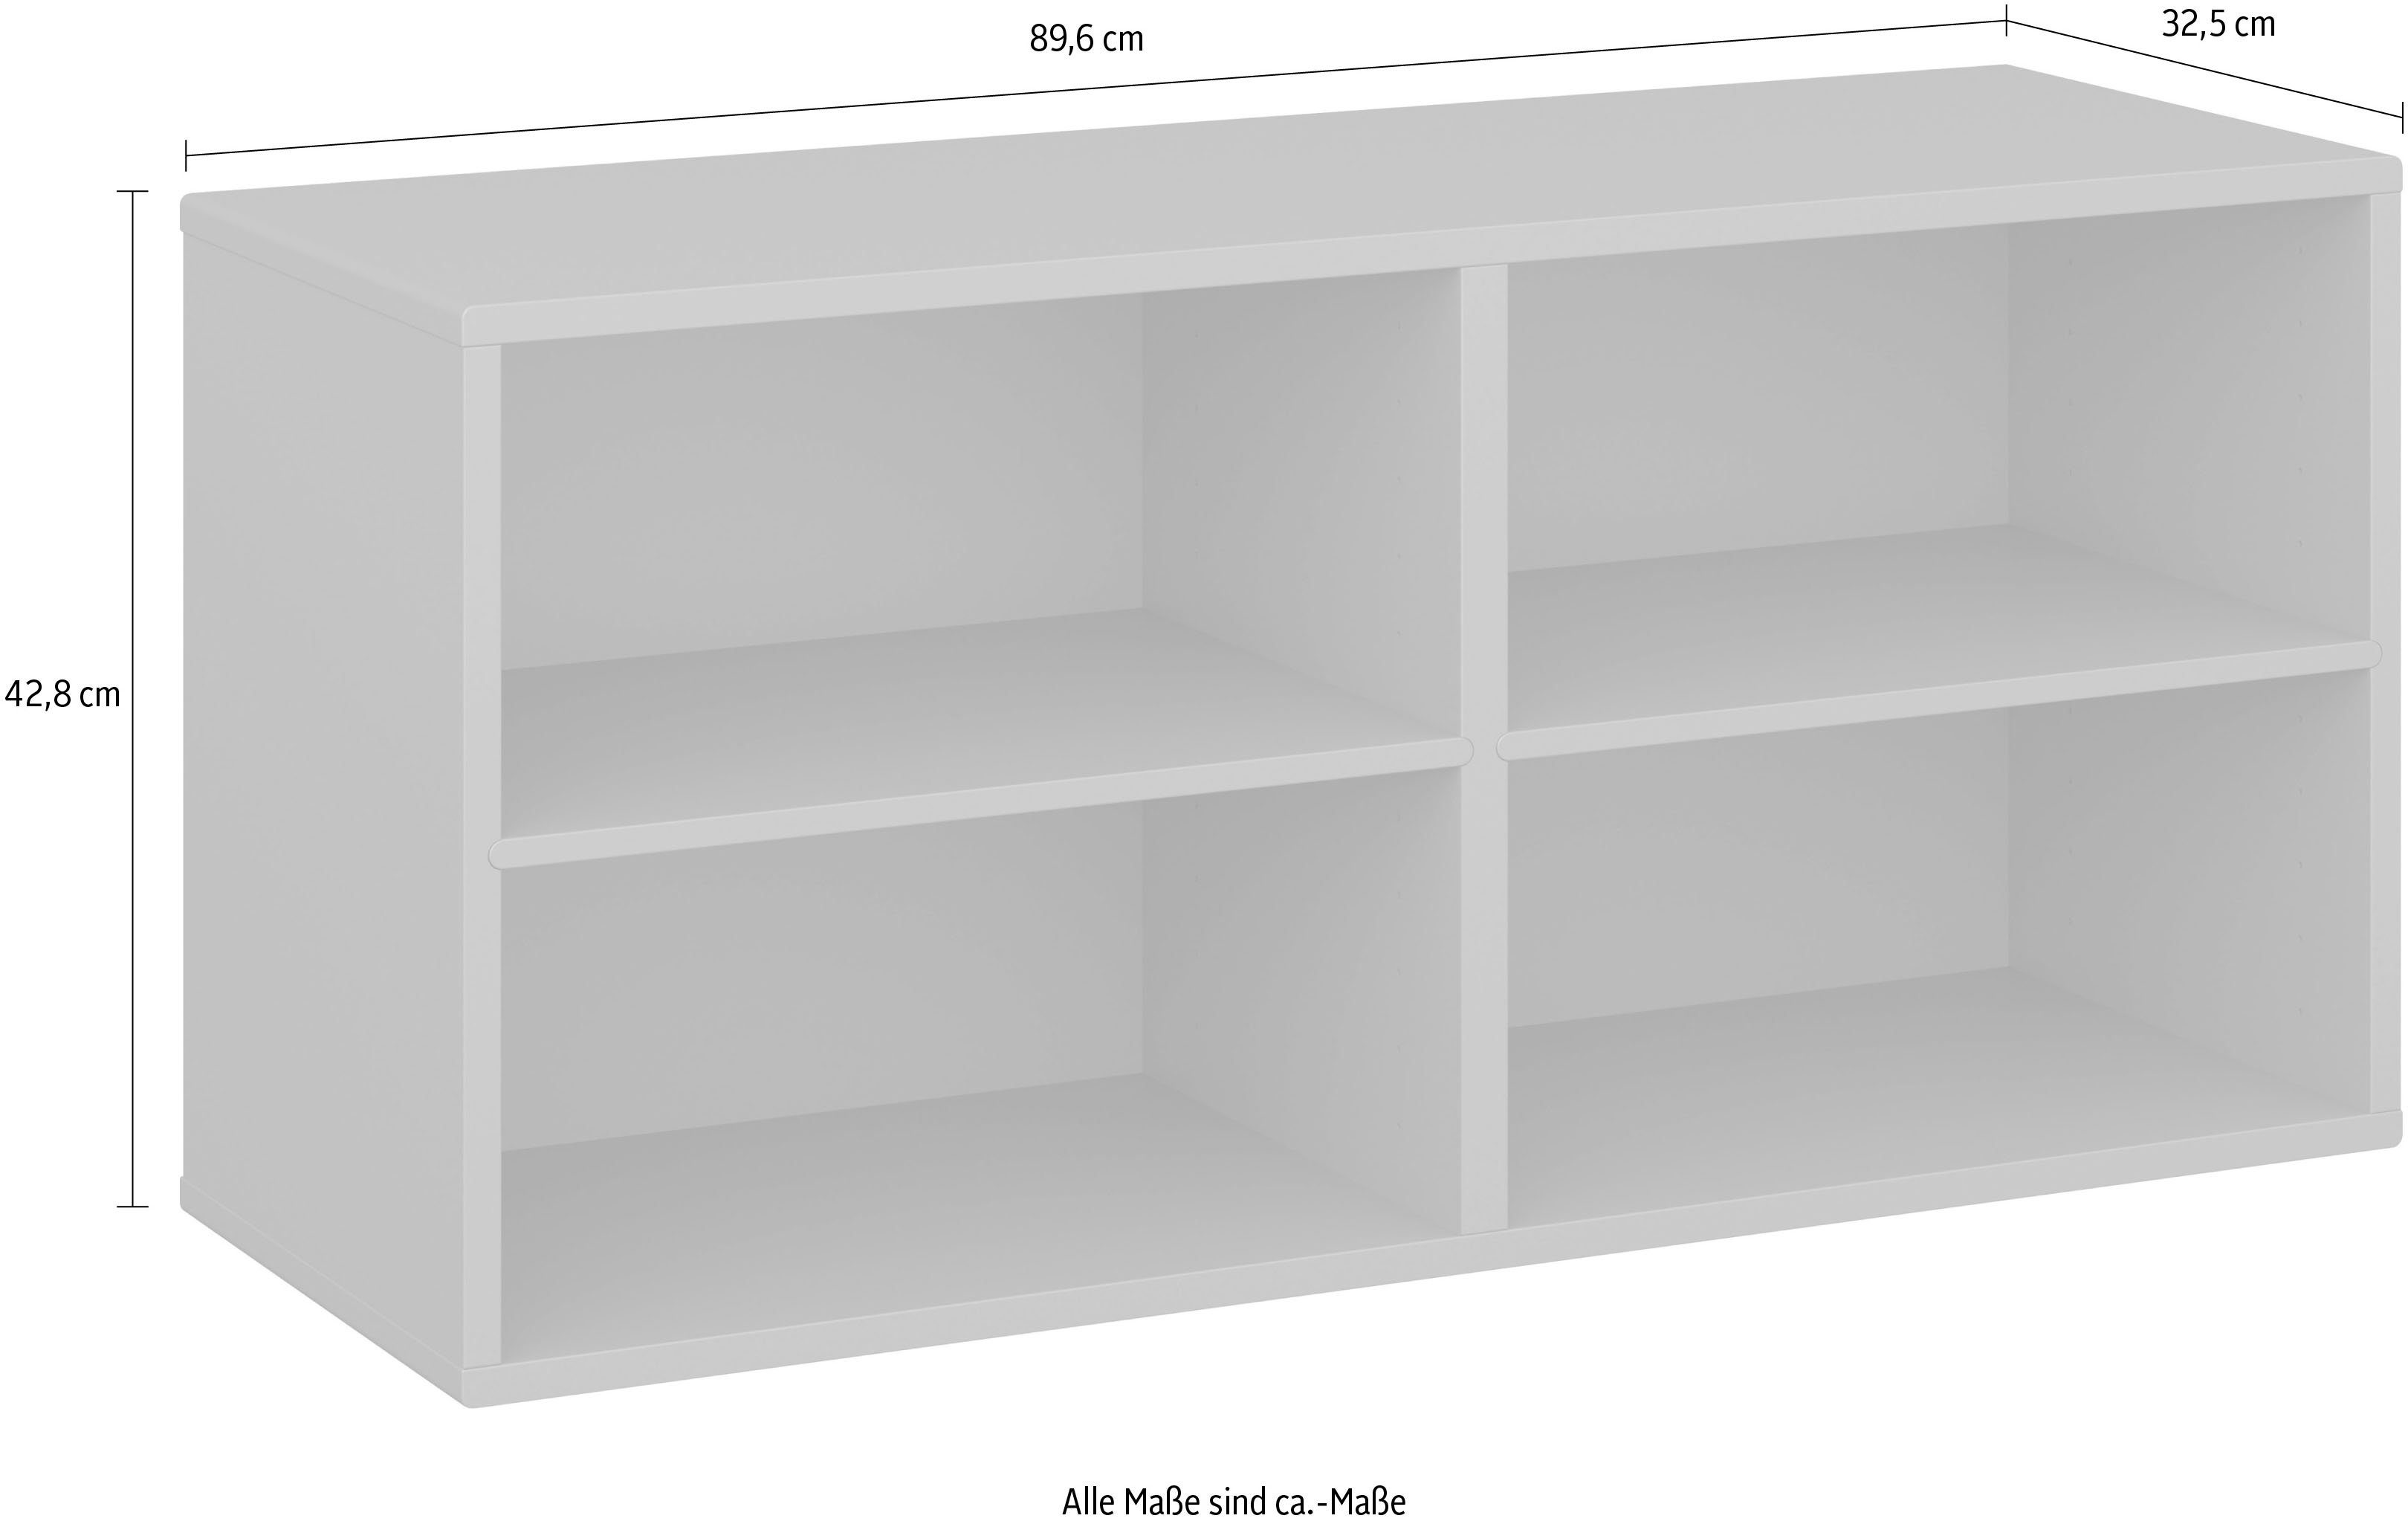 Hammel Furniture Breite 002, by Weiß Wandmontage, 2 flexibel Hammel mit | 89,6 festen Regalböden, cm, Weiß Modul Regal Keep